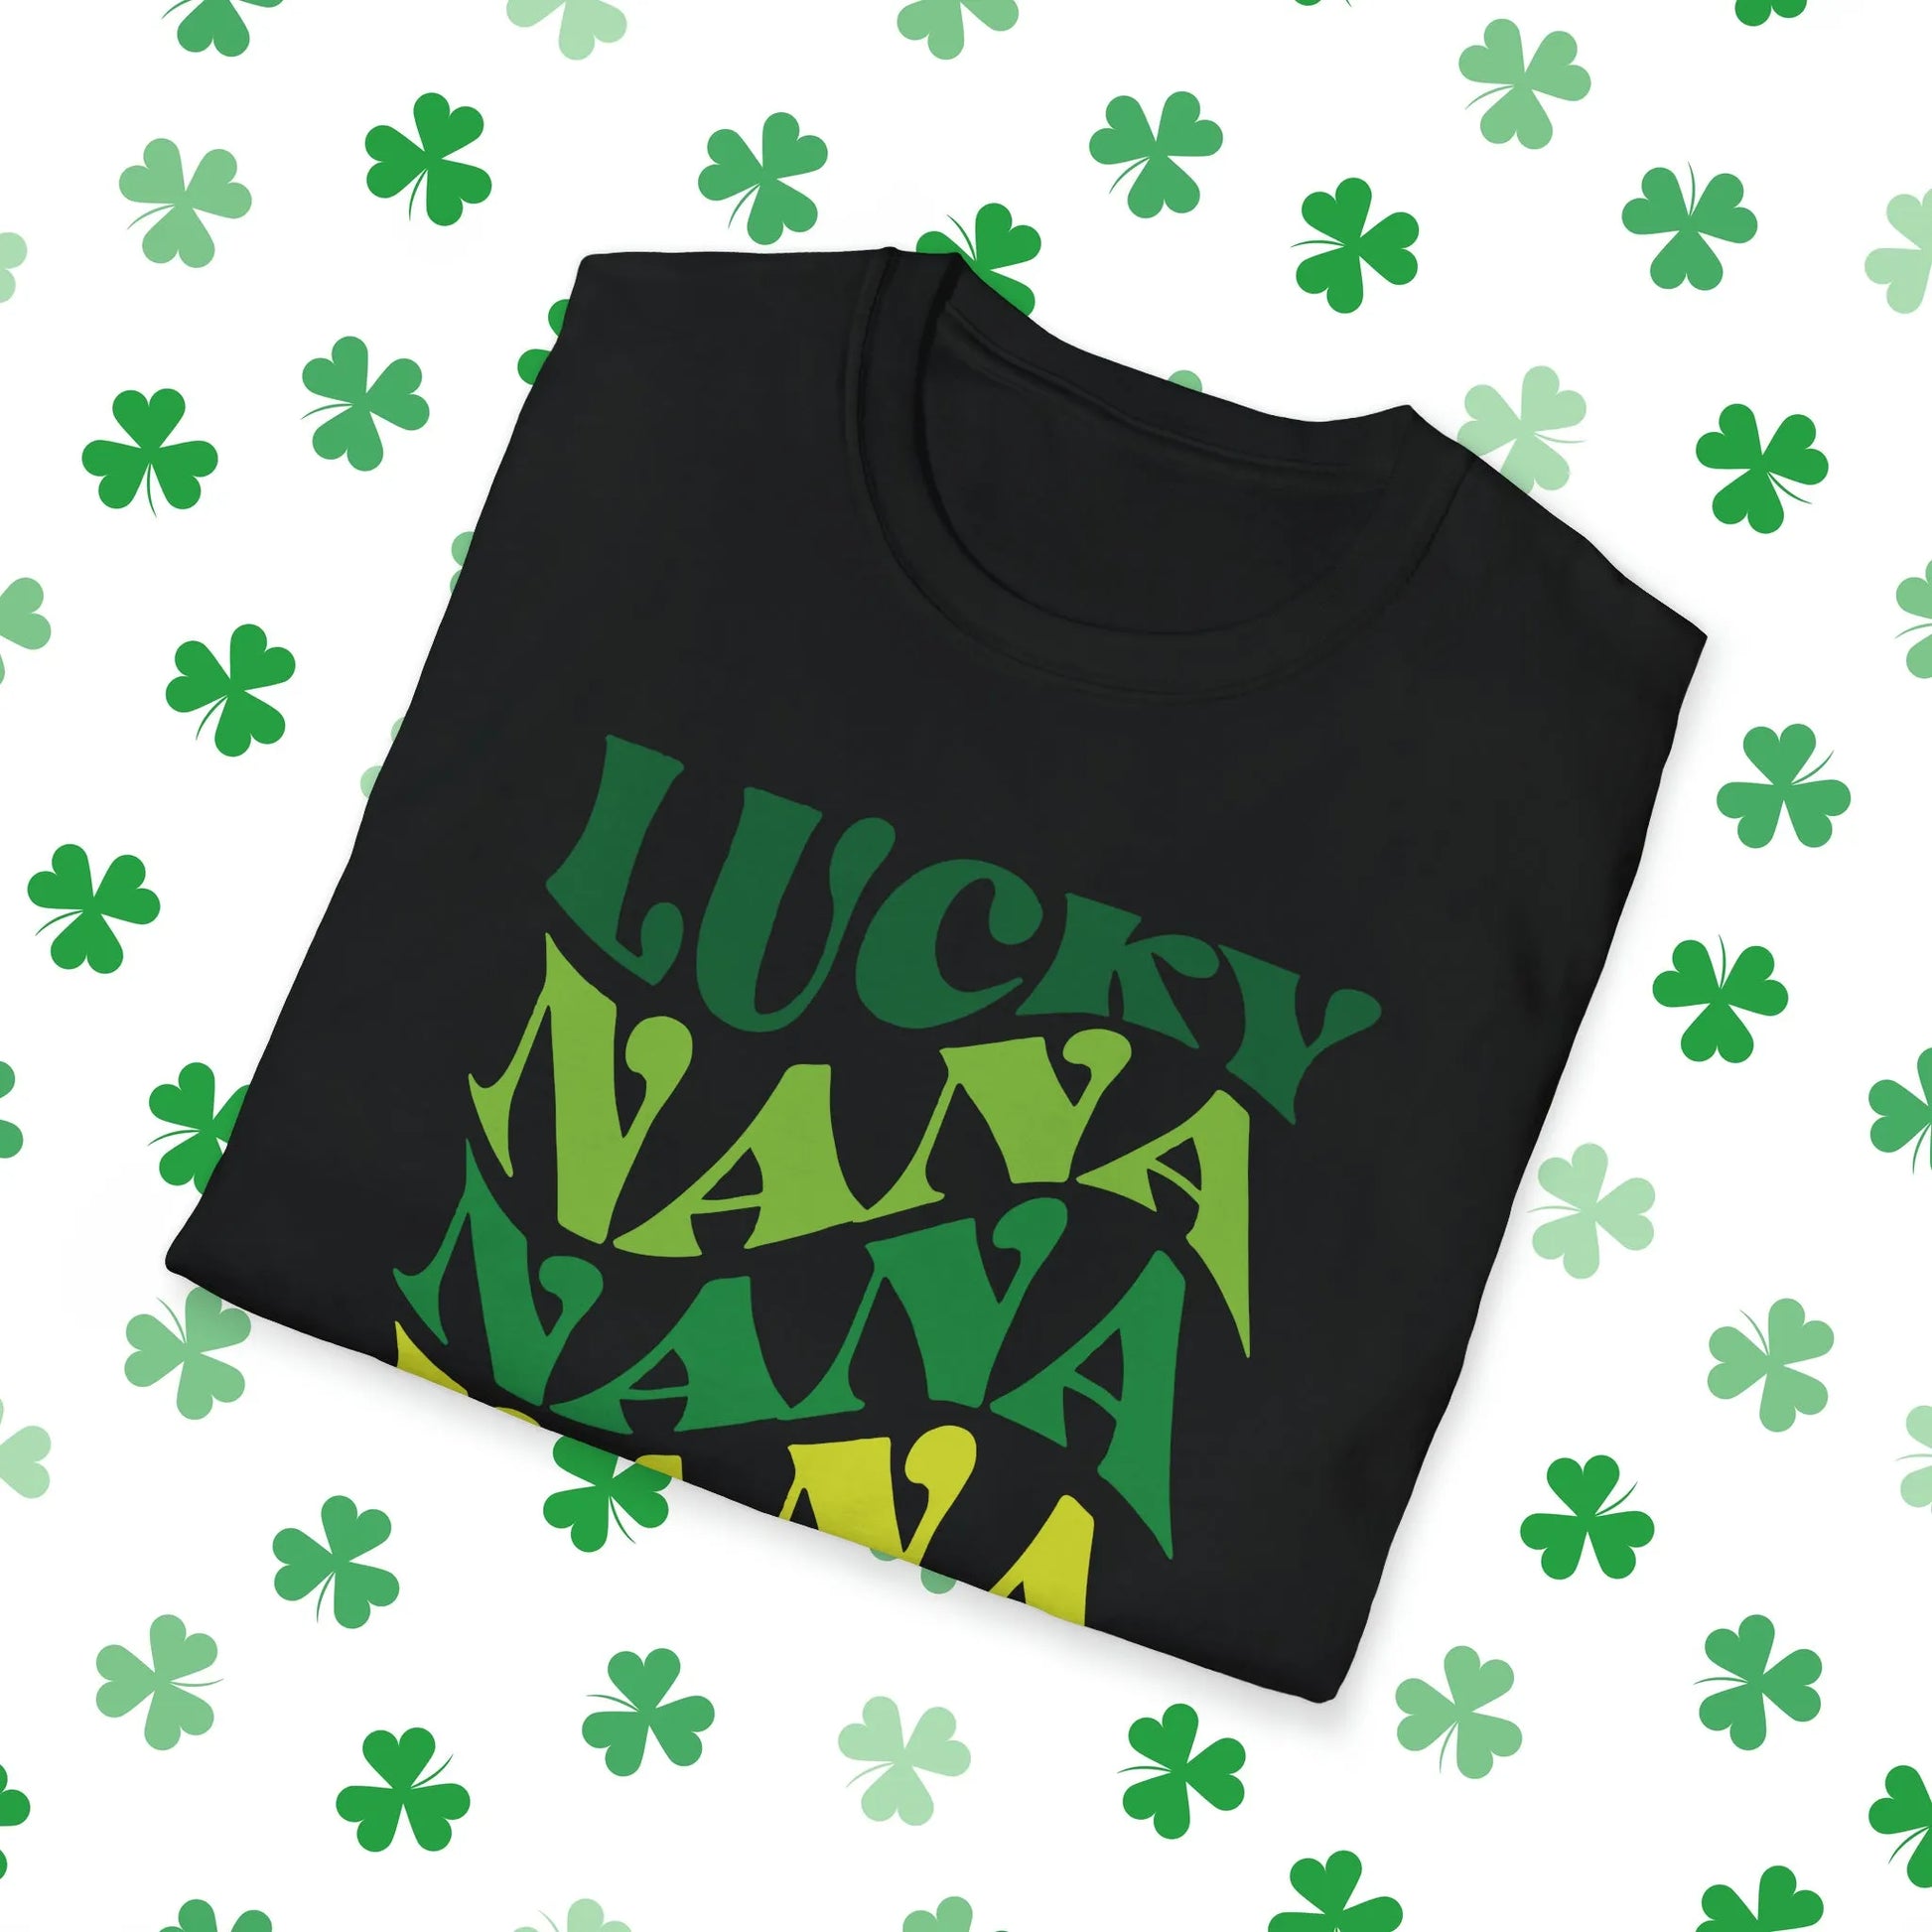 Lucky Nana Nana Nana Retro-Style St. Patrick's Day T-Shirt - Comfort & Charm - St. Patrick's Day Nana Shirt Black Folded